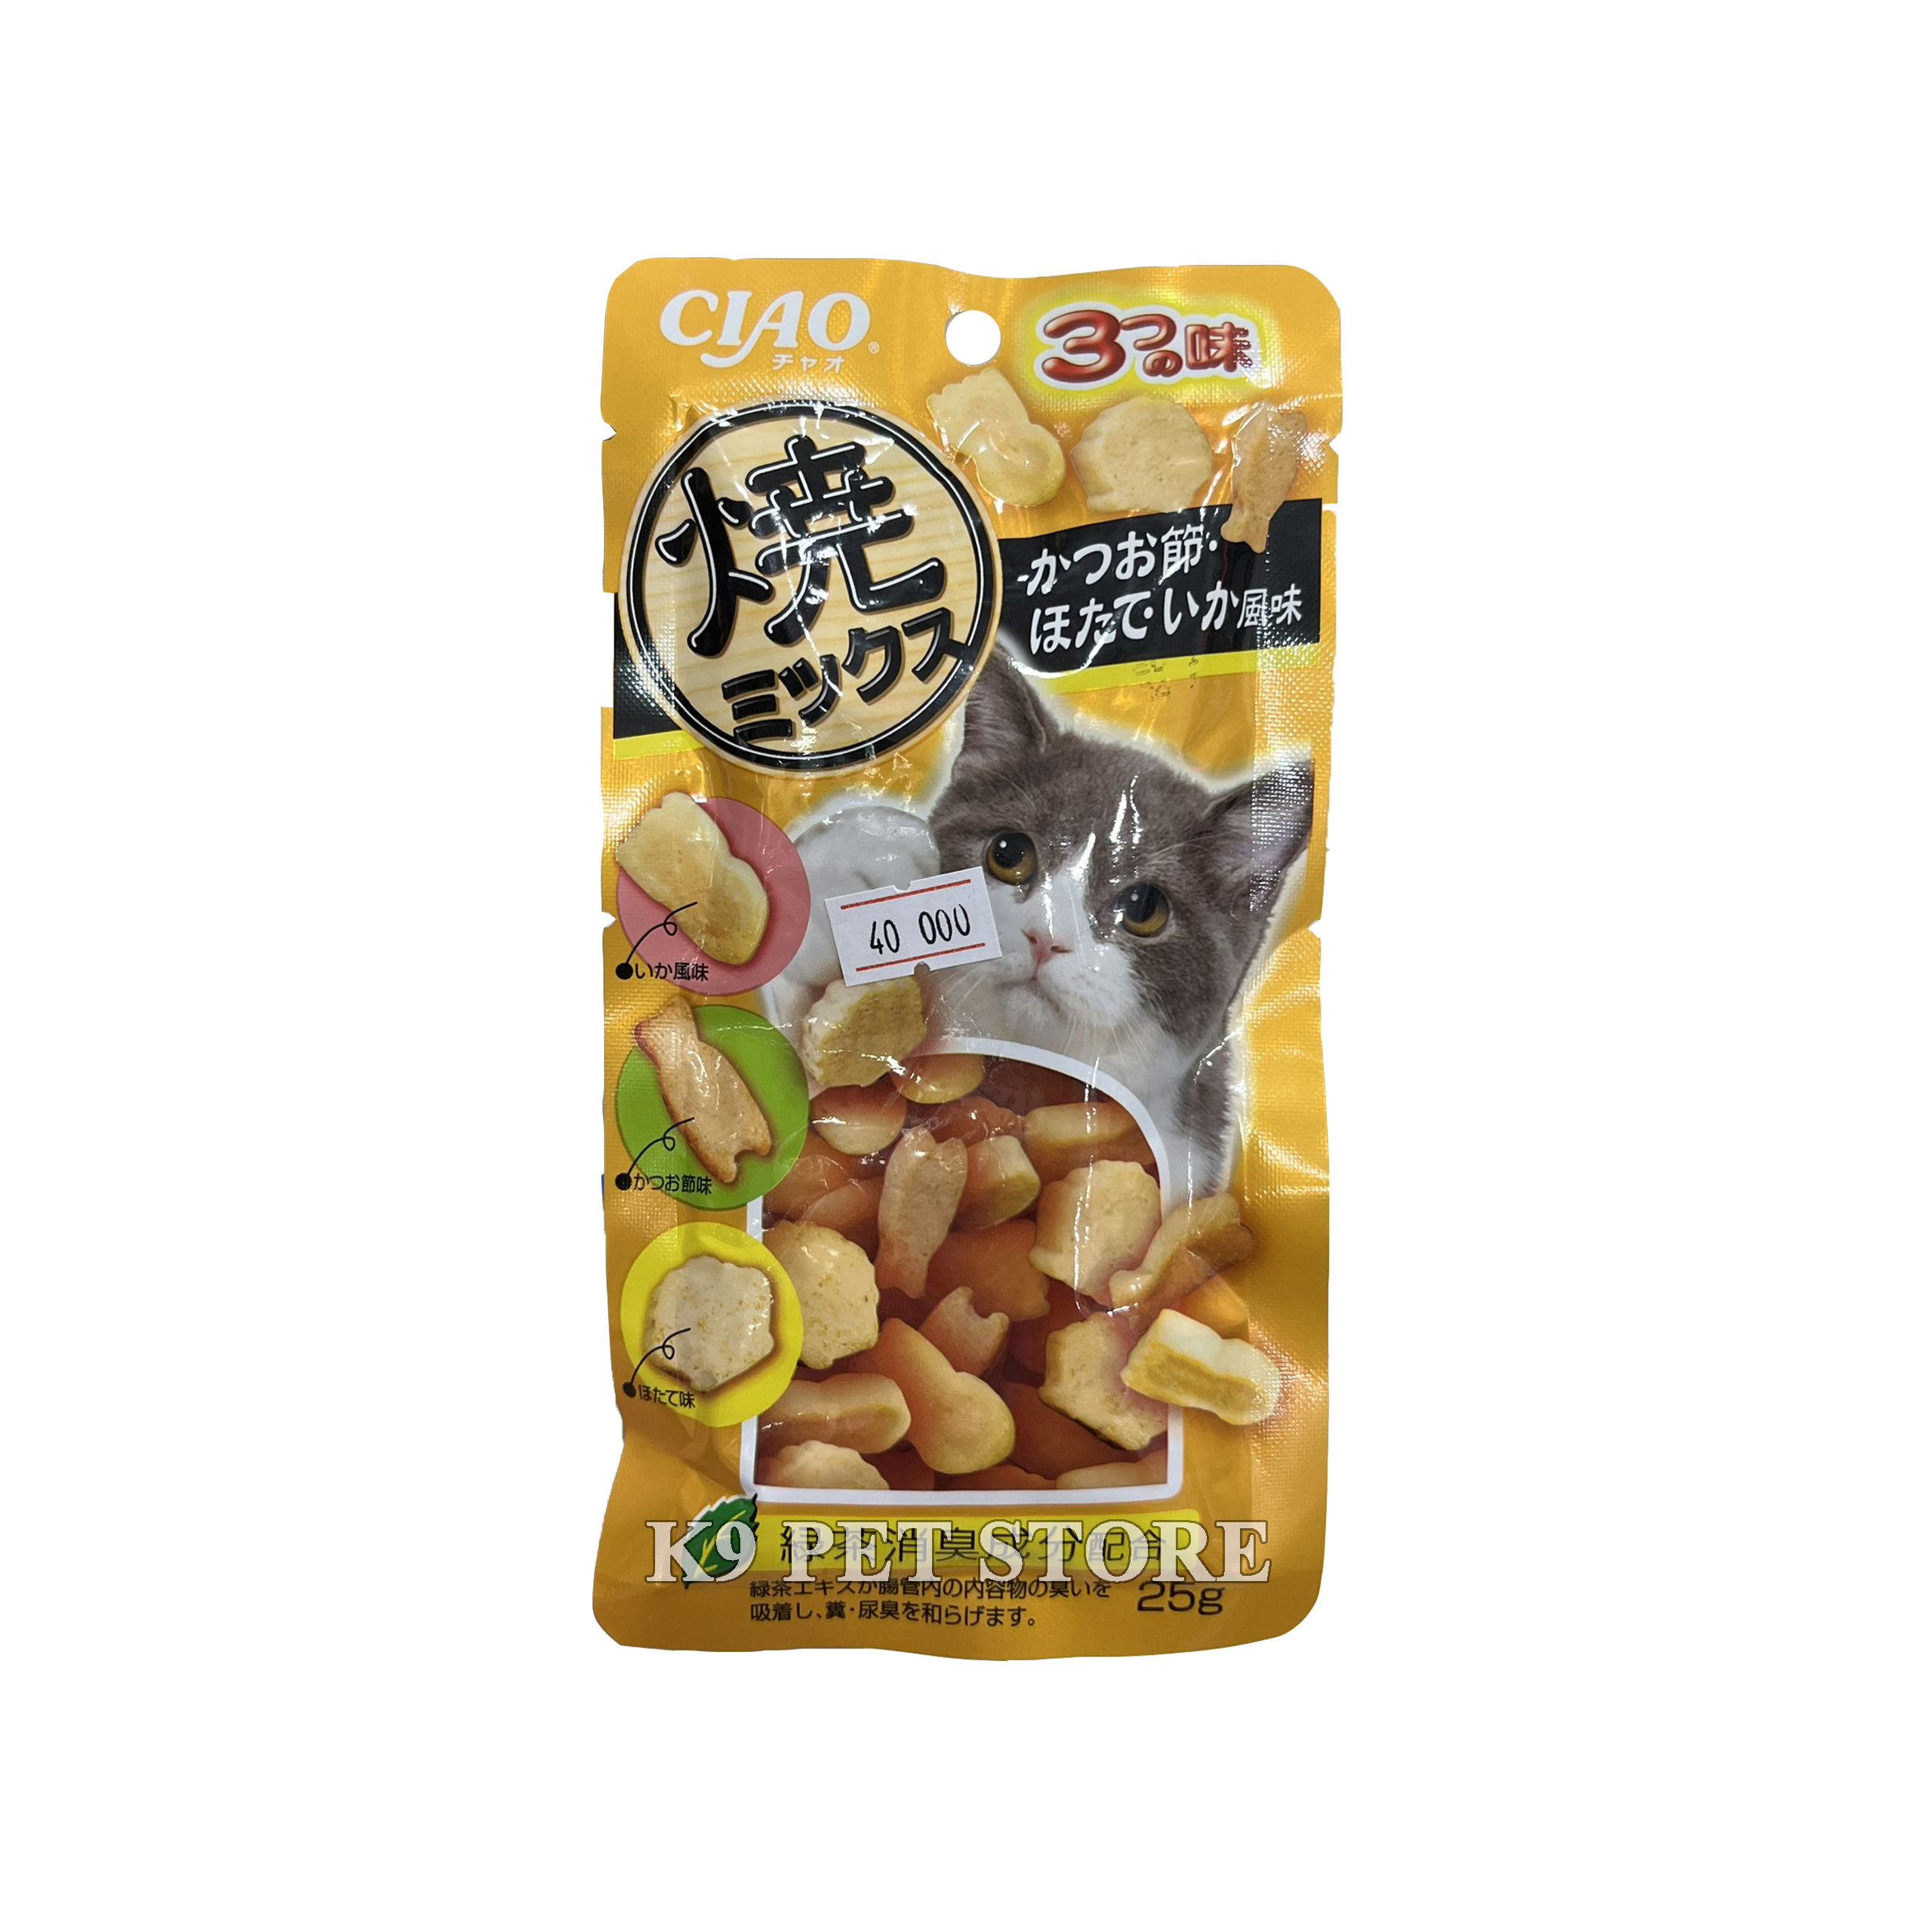 Ciao snack mềm cho mèo 25g vị cá ngừ, gà, cá Bonito sấy khô và mực (QSC-121)